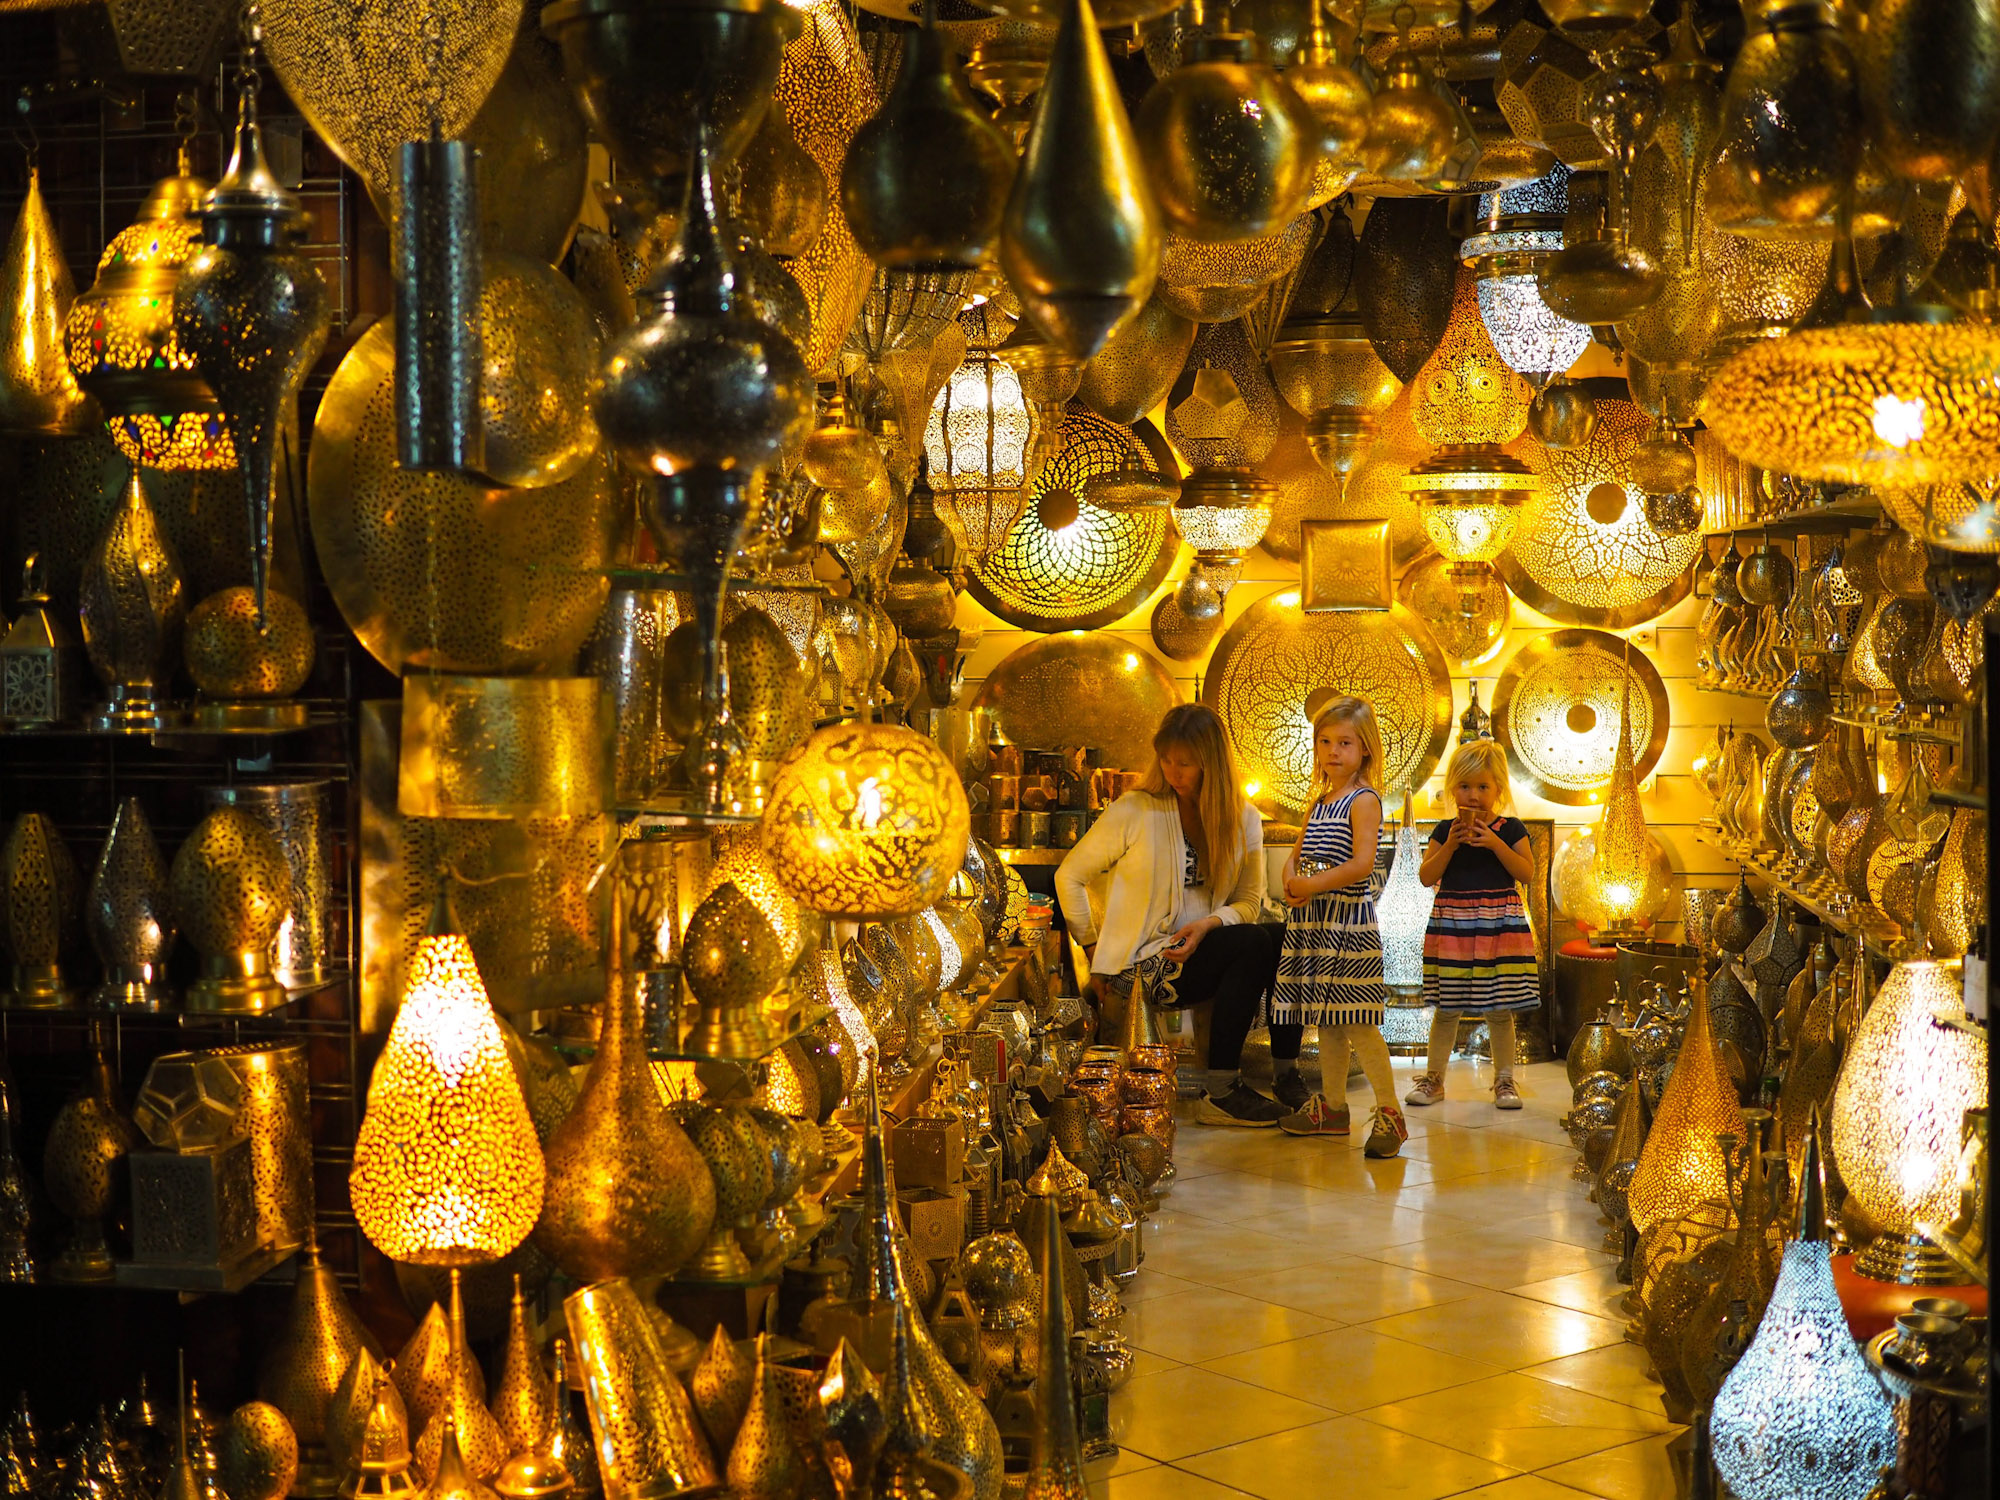 Shopping for lanterns in the Marrakech Medina